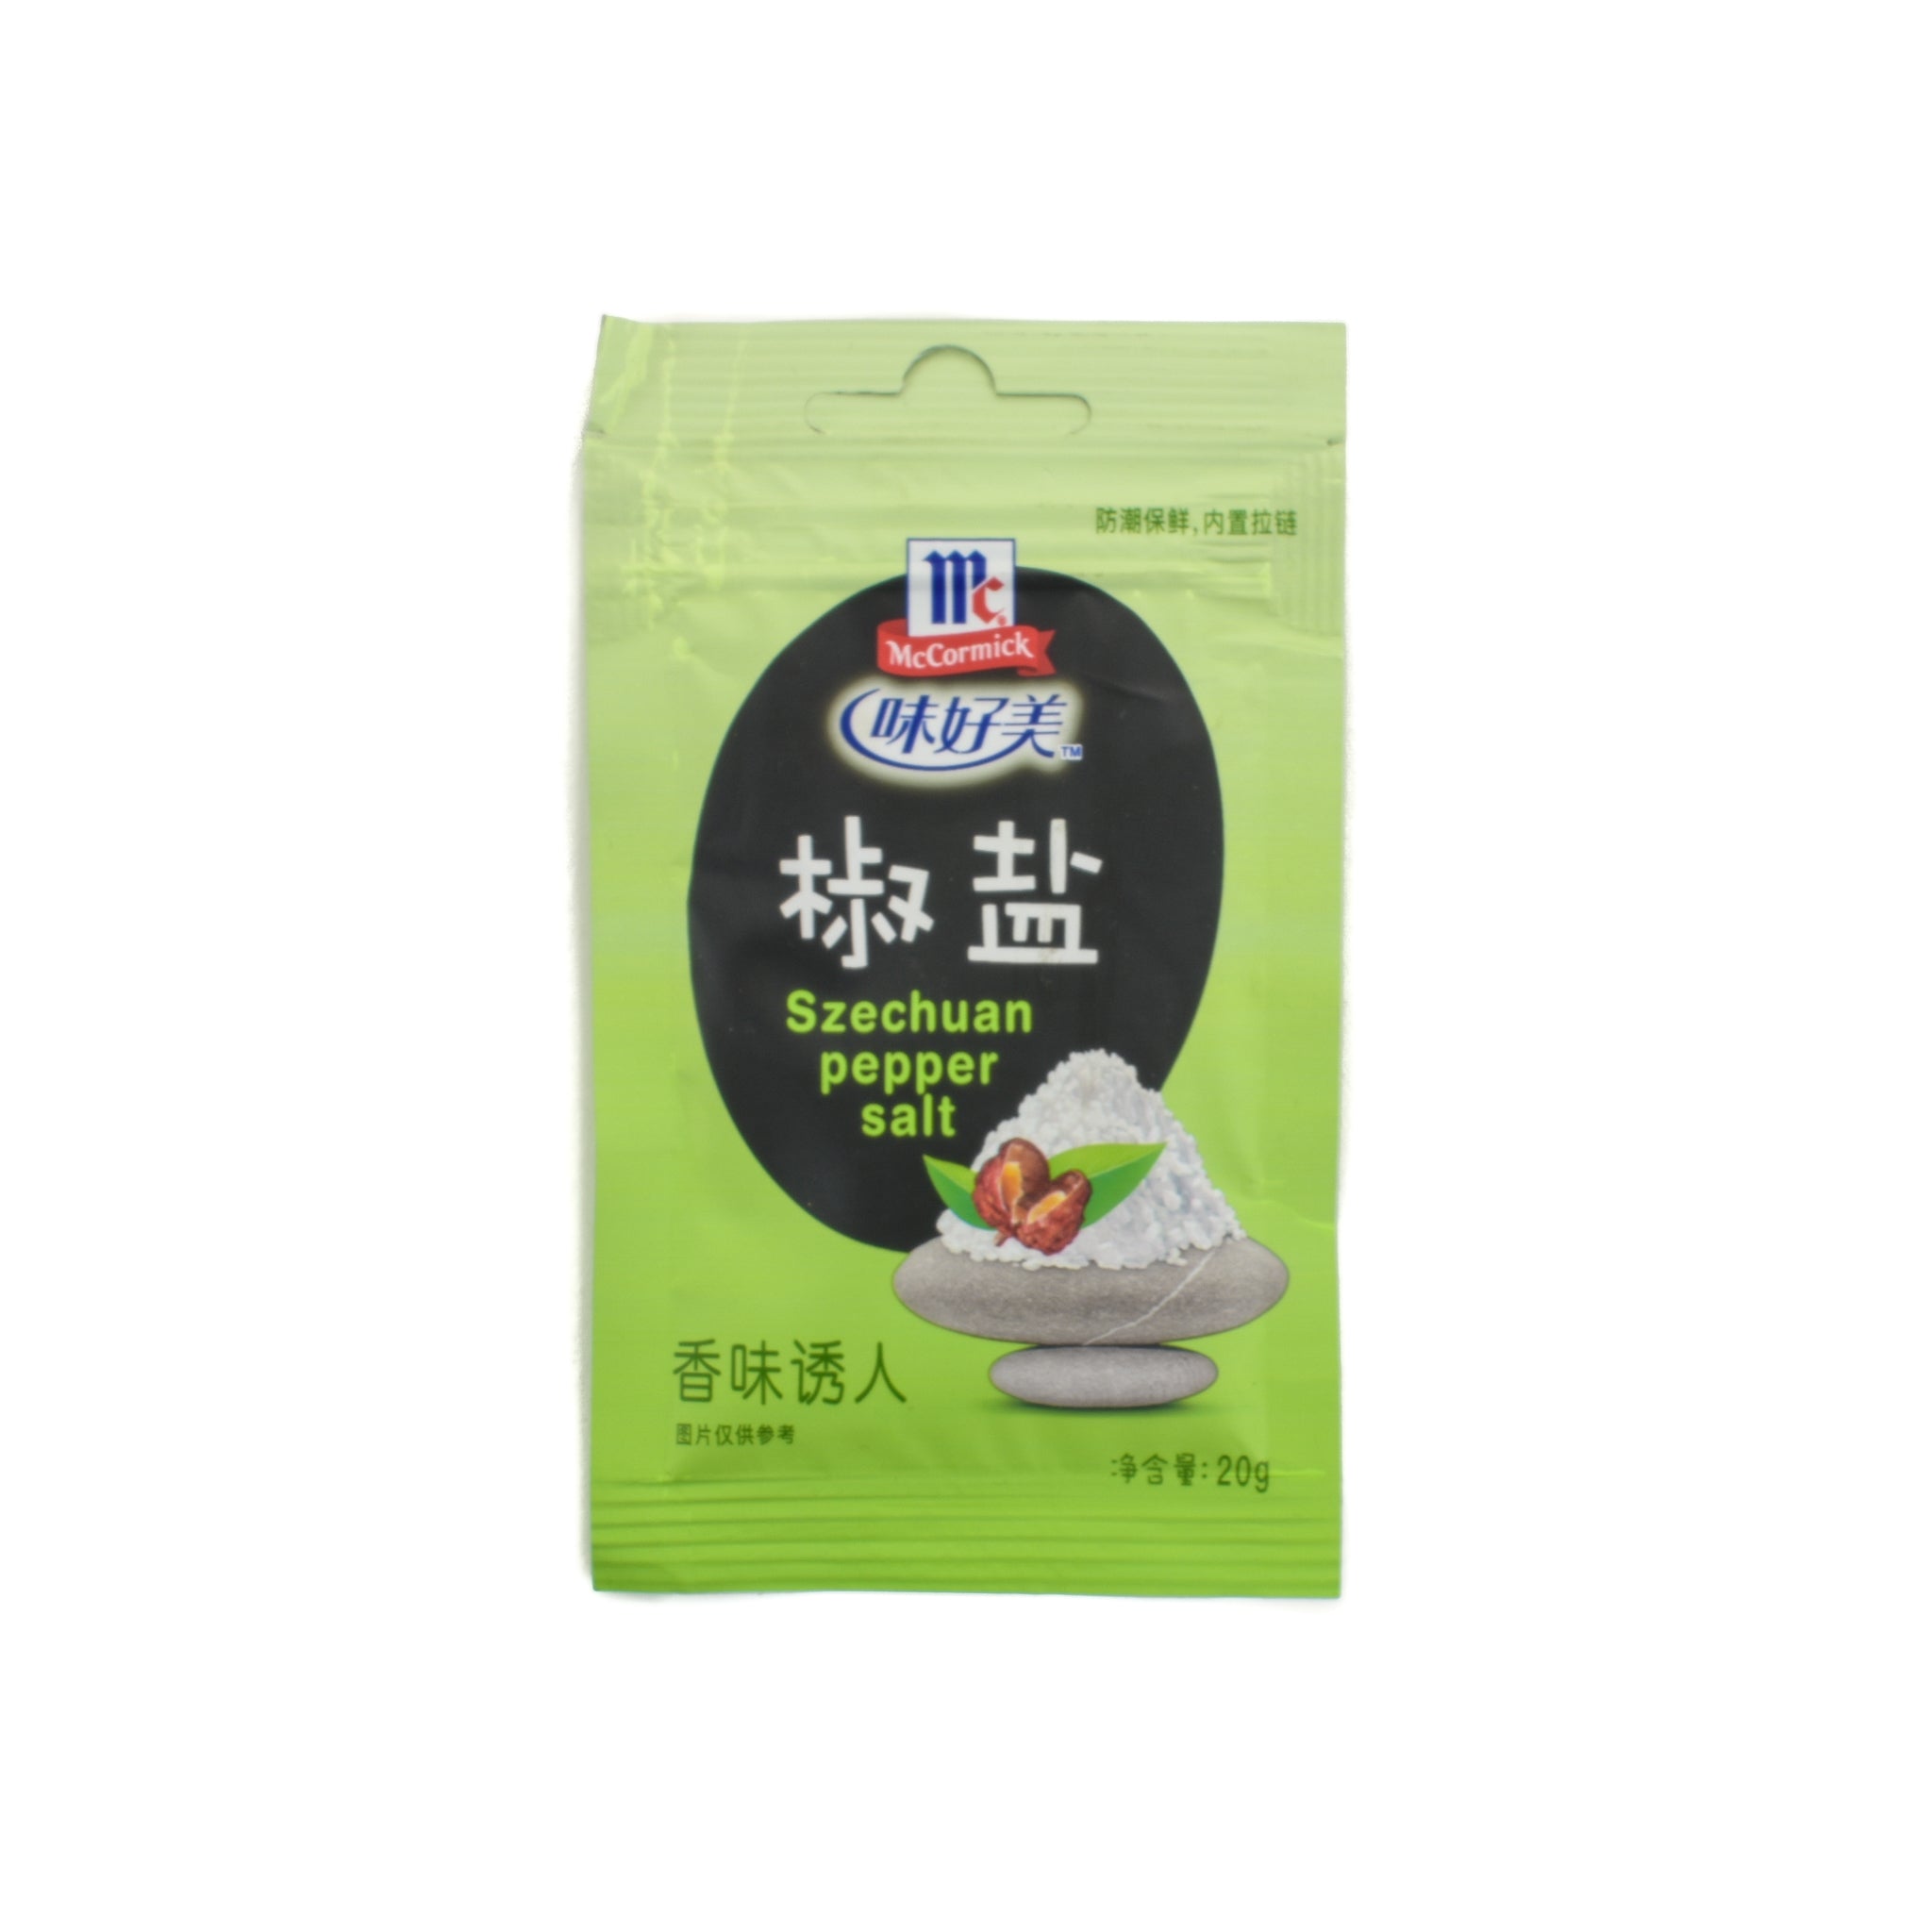 Sichuan Pepper & Salt, 20g